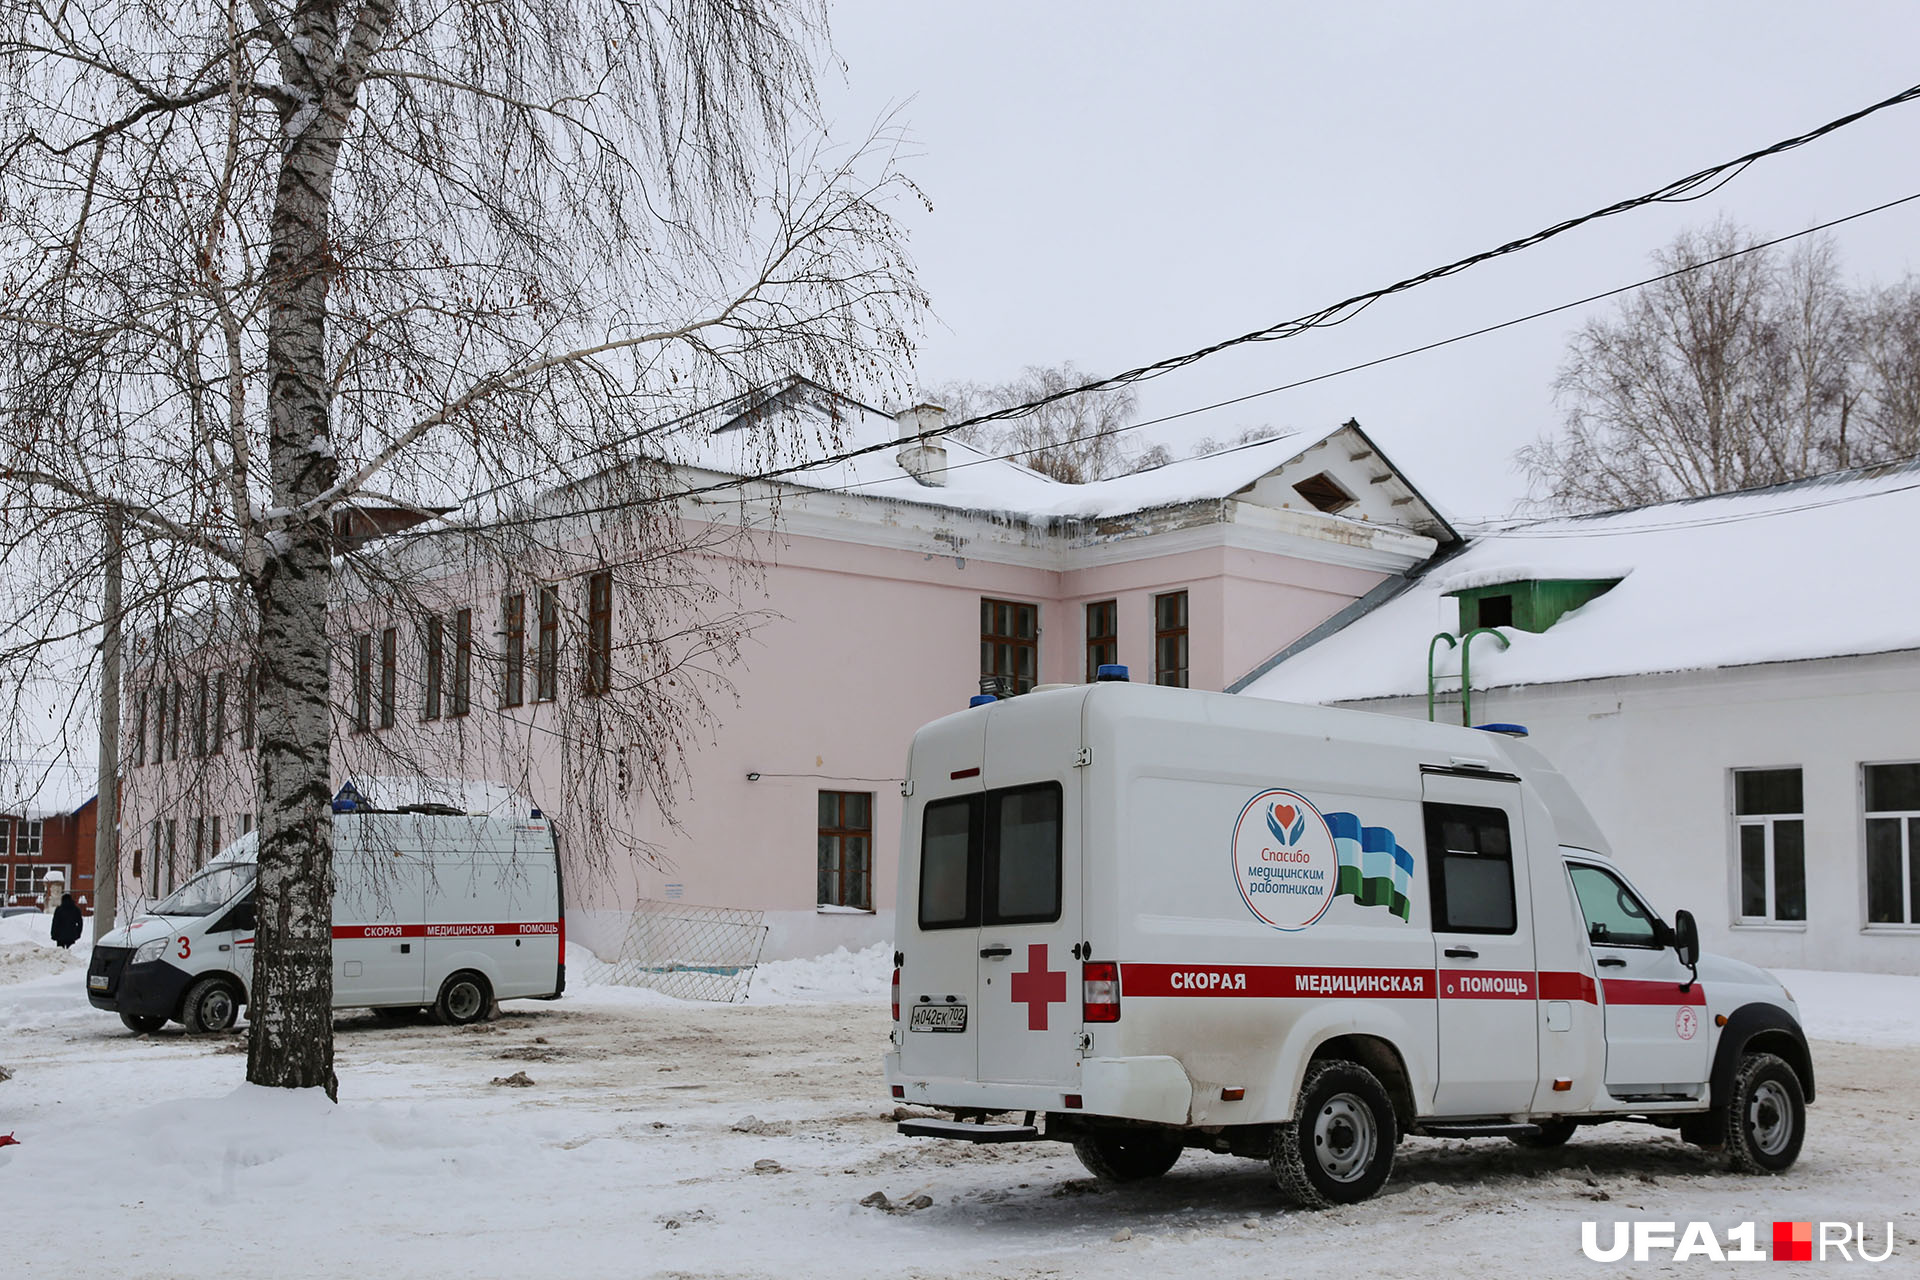 Экстренный уфа. Отделение скорой помощи. Машины скорой помощи Украины.